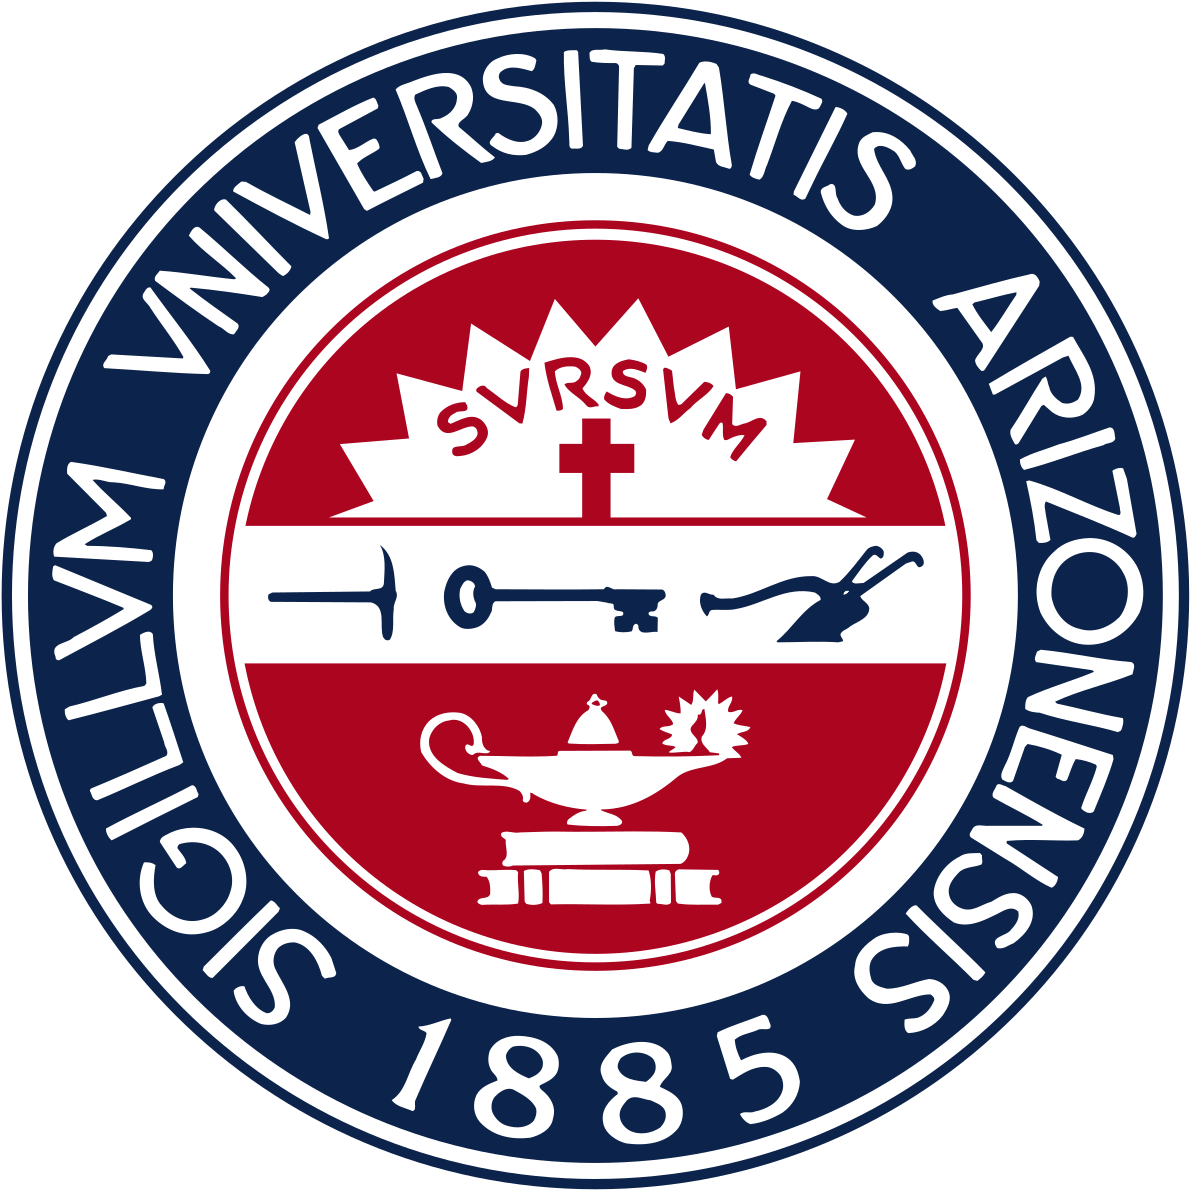 University Of Arizona, Wikipedia - University Of Arizona Seal (1200x1200)